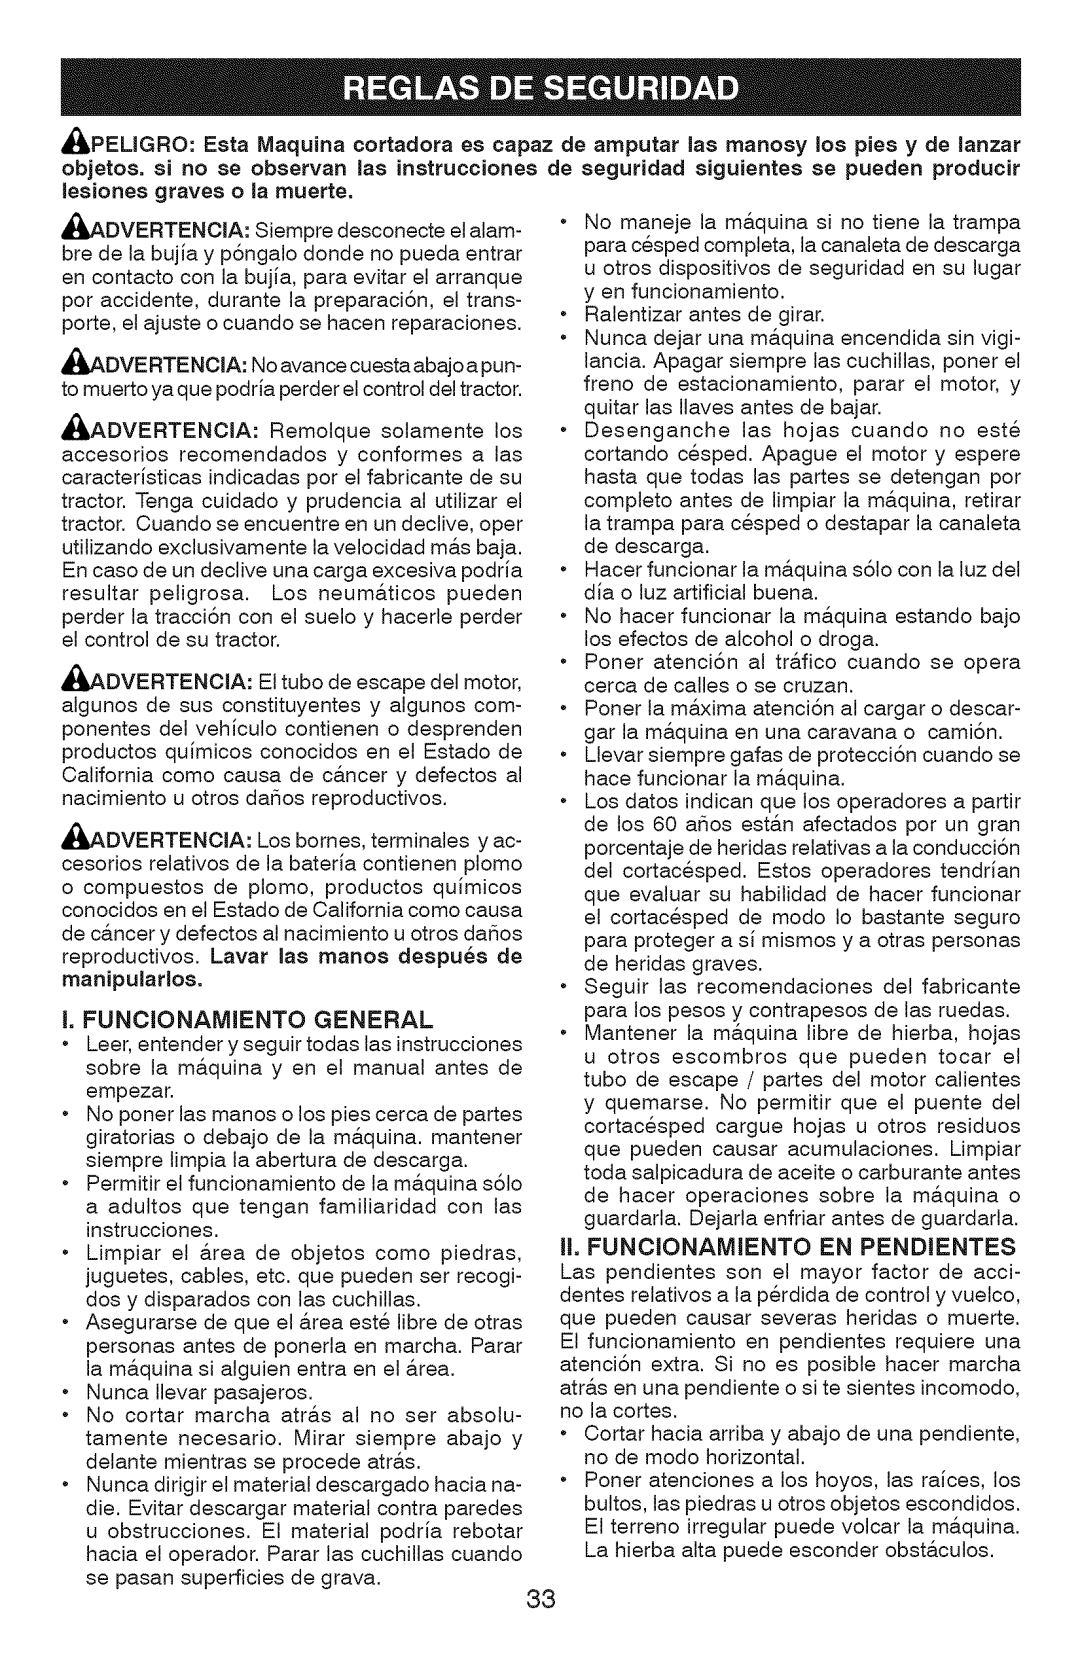 Craftsman 917.289362 owner manual Advertencia, Advertenoia, Dvertencia, Funcionamiento General 